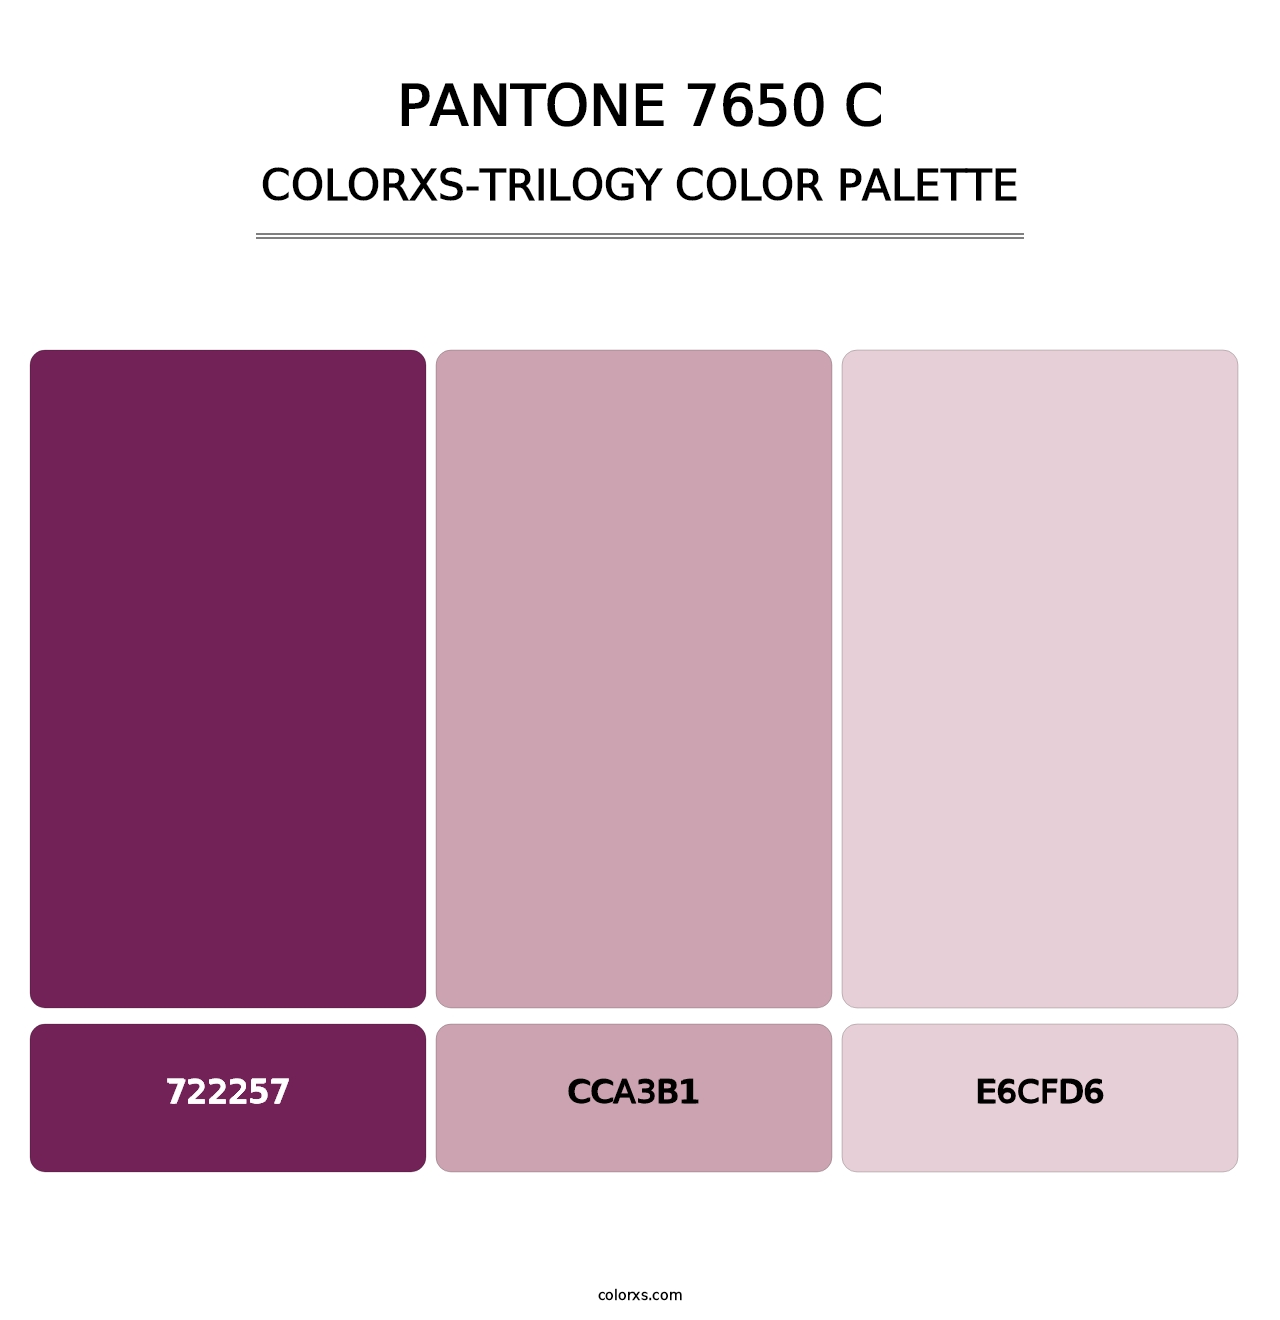 PANTONE 7650 C - Colorxs Trilogy Palette